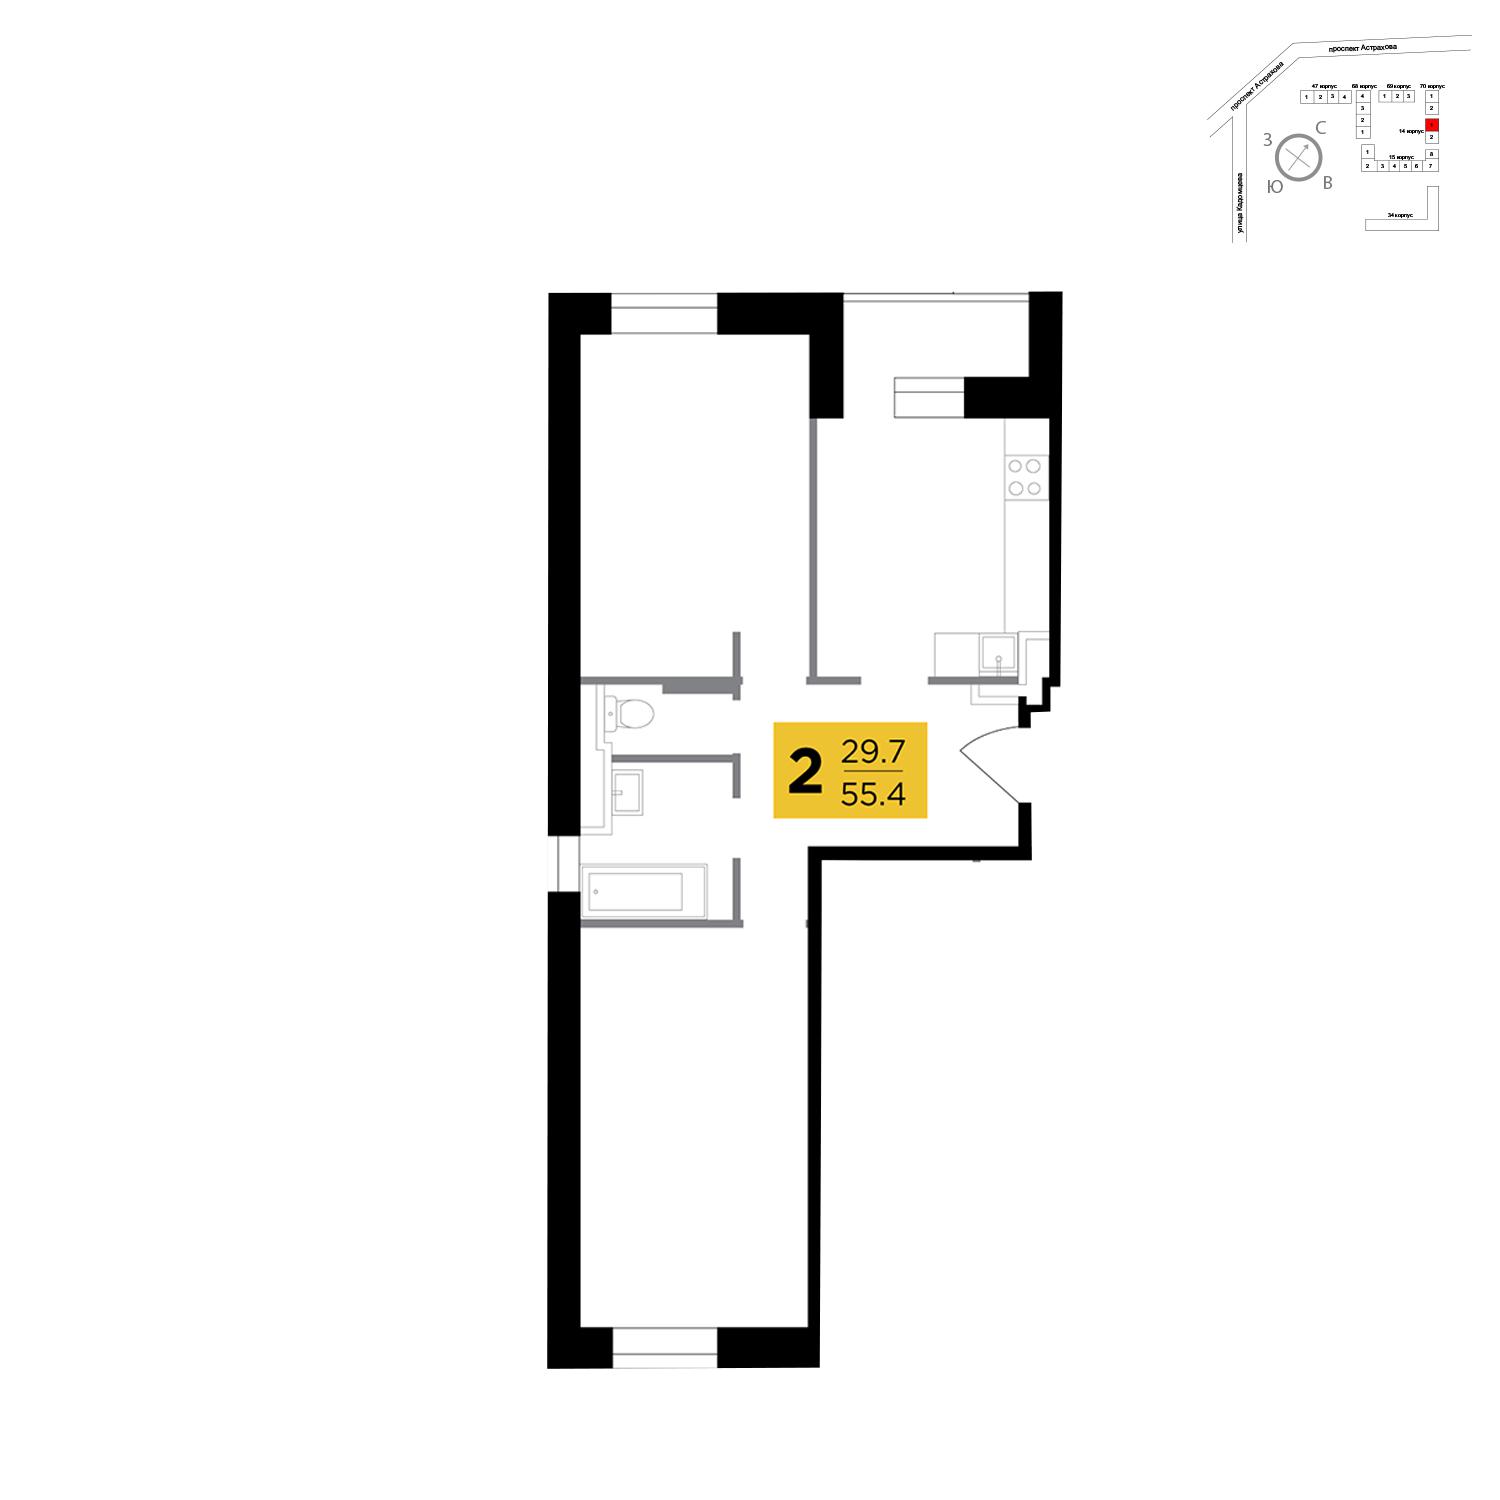 Продаётся 2-комнатная квартира в новостройке 55.4 кв.м. этаж 5/16 за 5 877 940 руб 